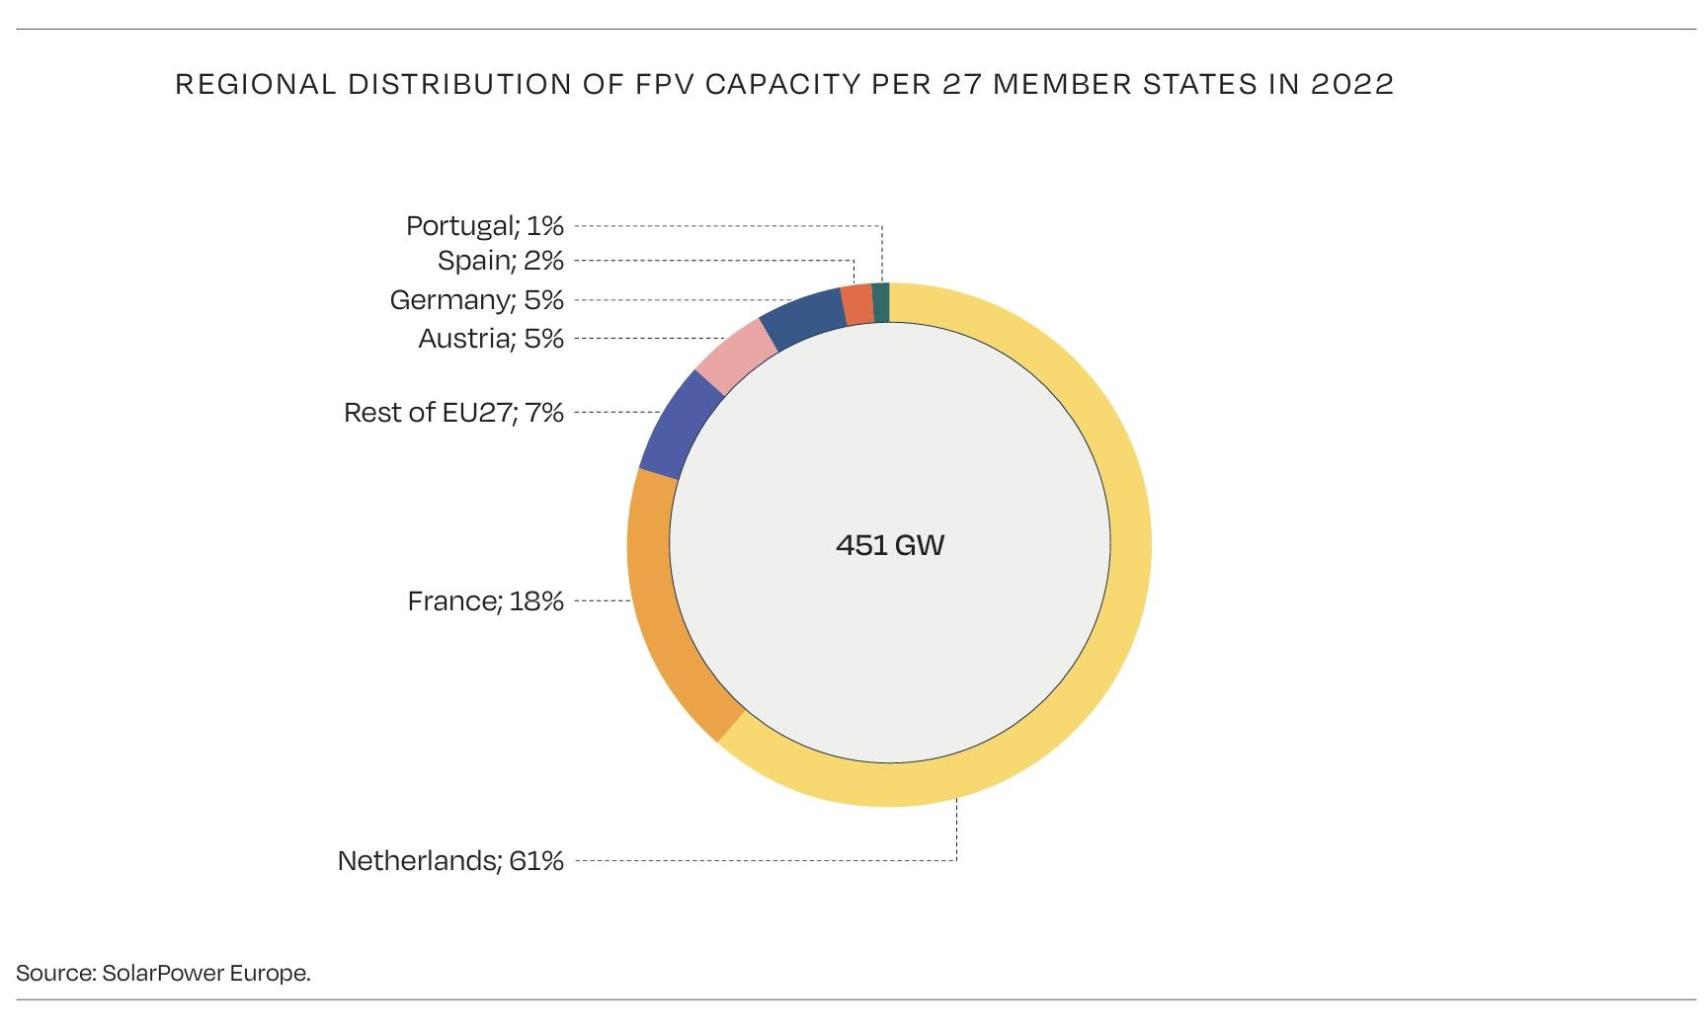 Distribución regional de la capacidad de fotovoltaica flotante en los 27 estados miembros en 2022